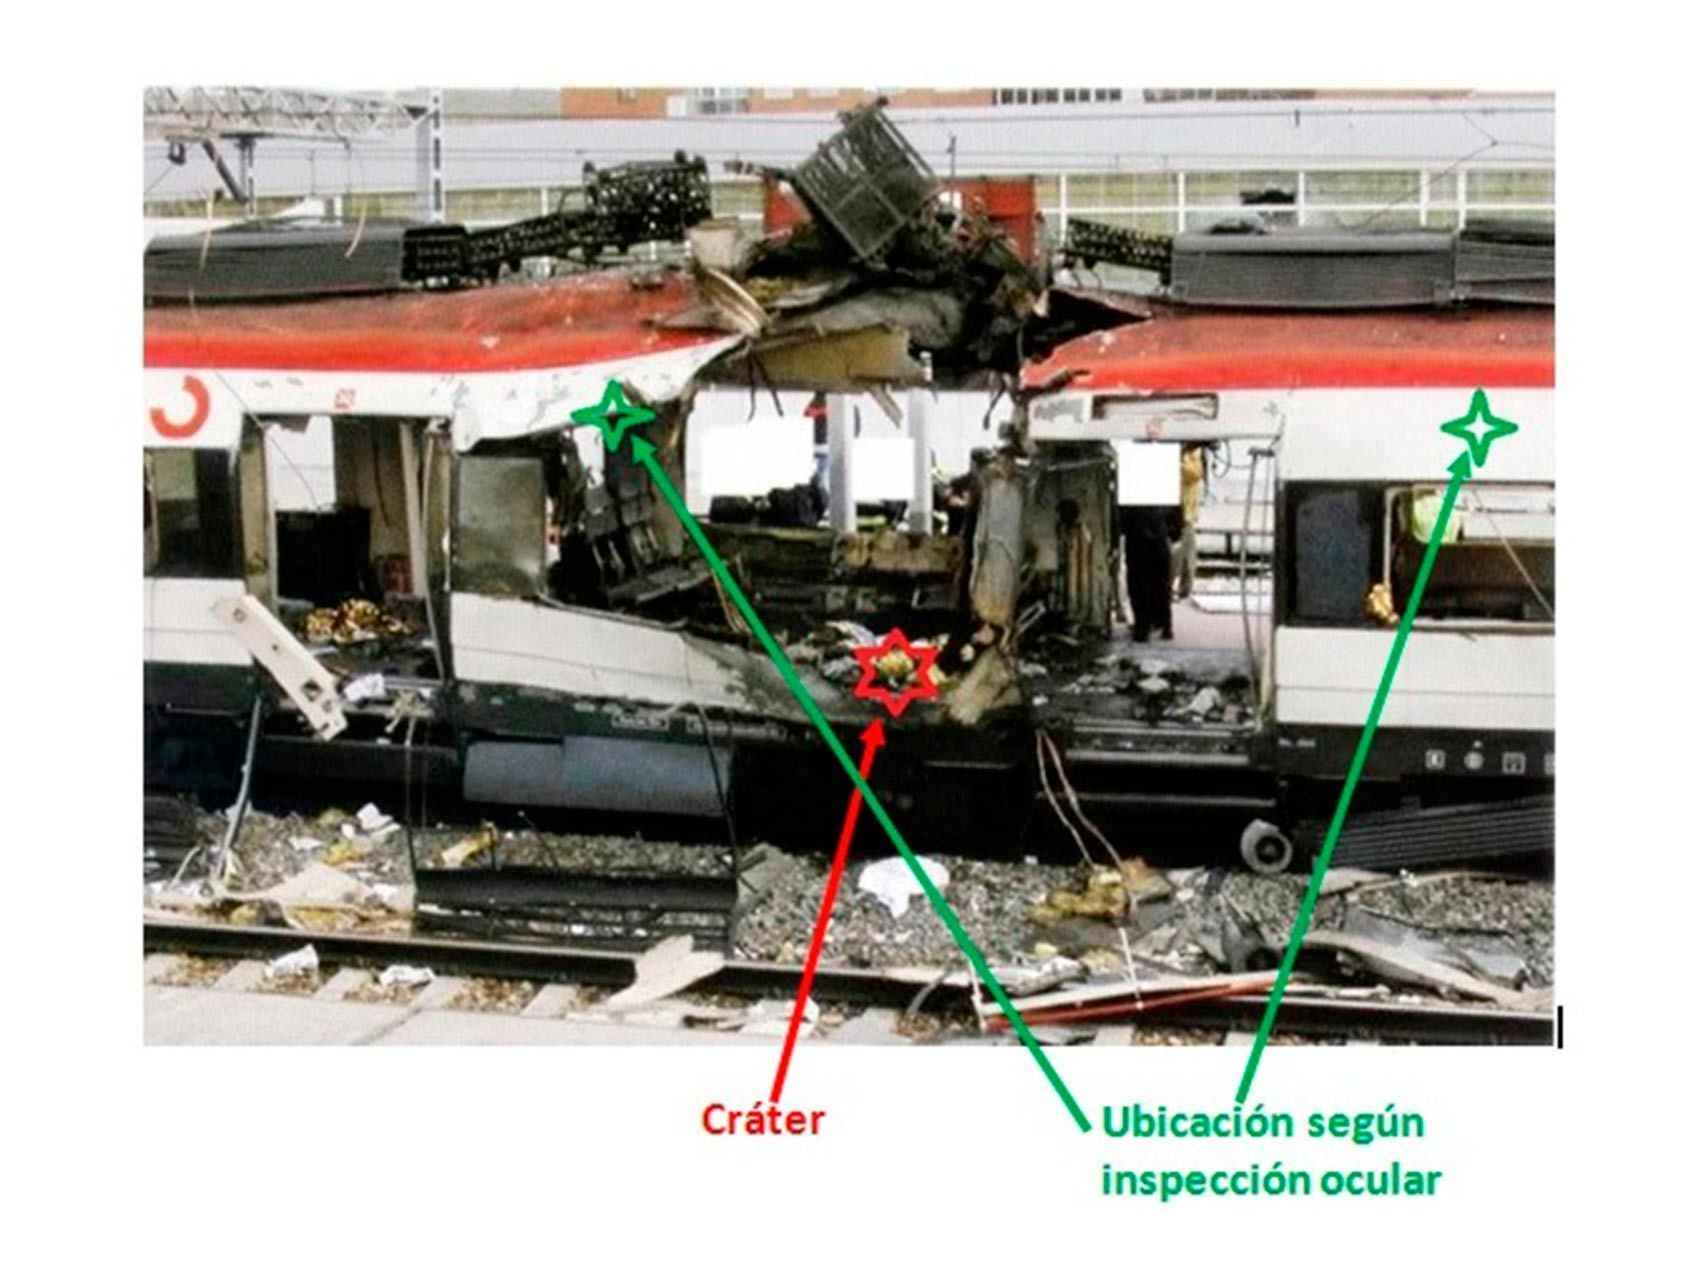 Las dos posibles ubicaciones de la bomba, según la inspección ocular, y el lugar donde estalló.